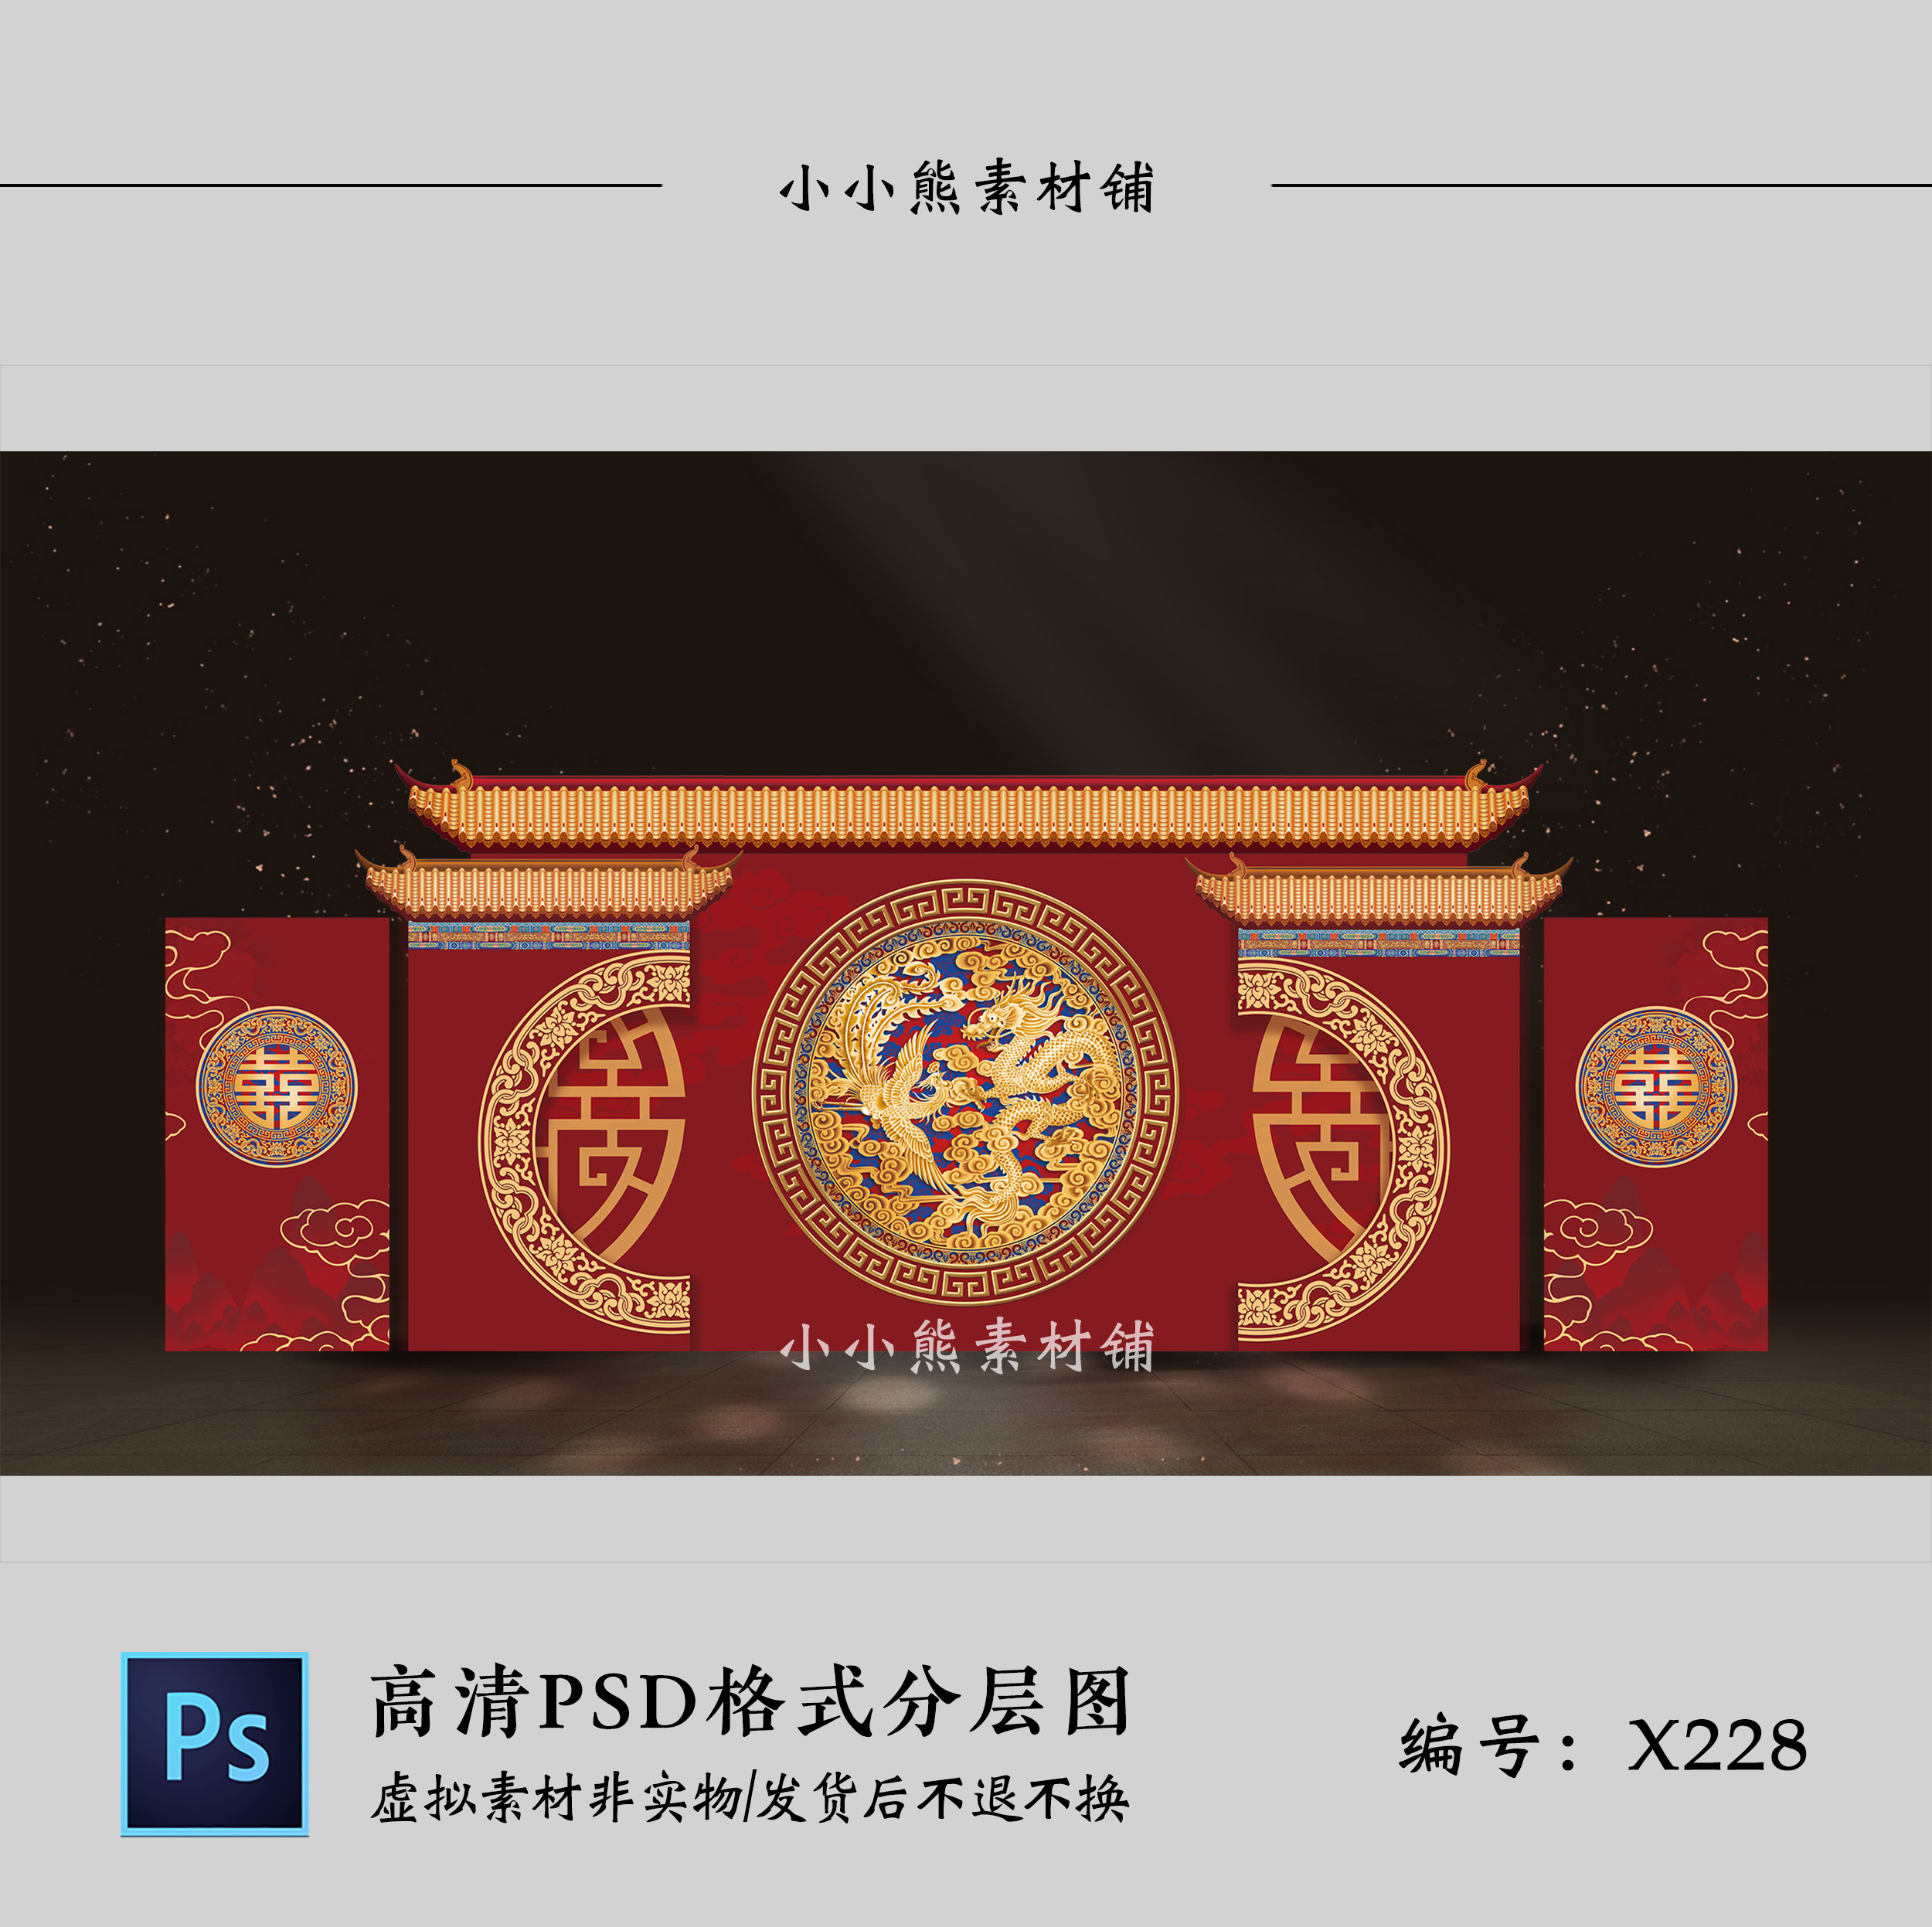 暗红色新中式龙凤喜字婚礼迎宾签到舞台背景墙设计效果图PSD模板